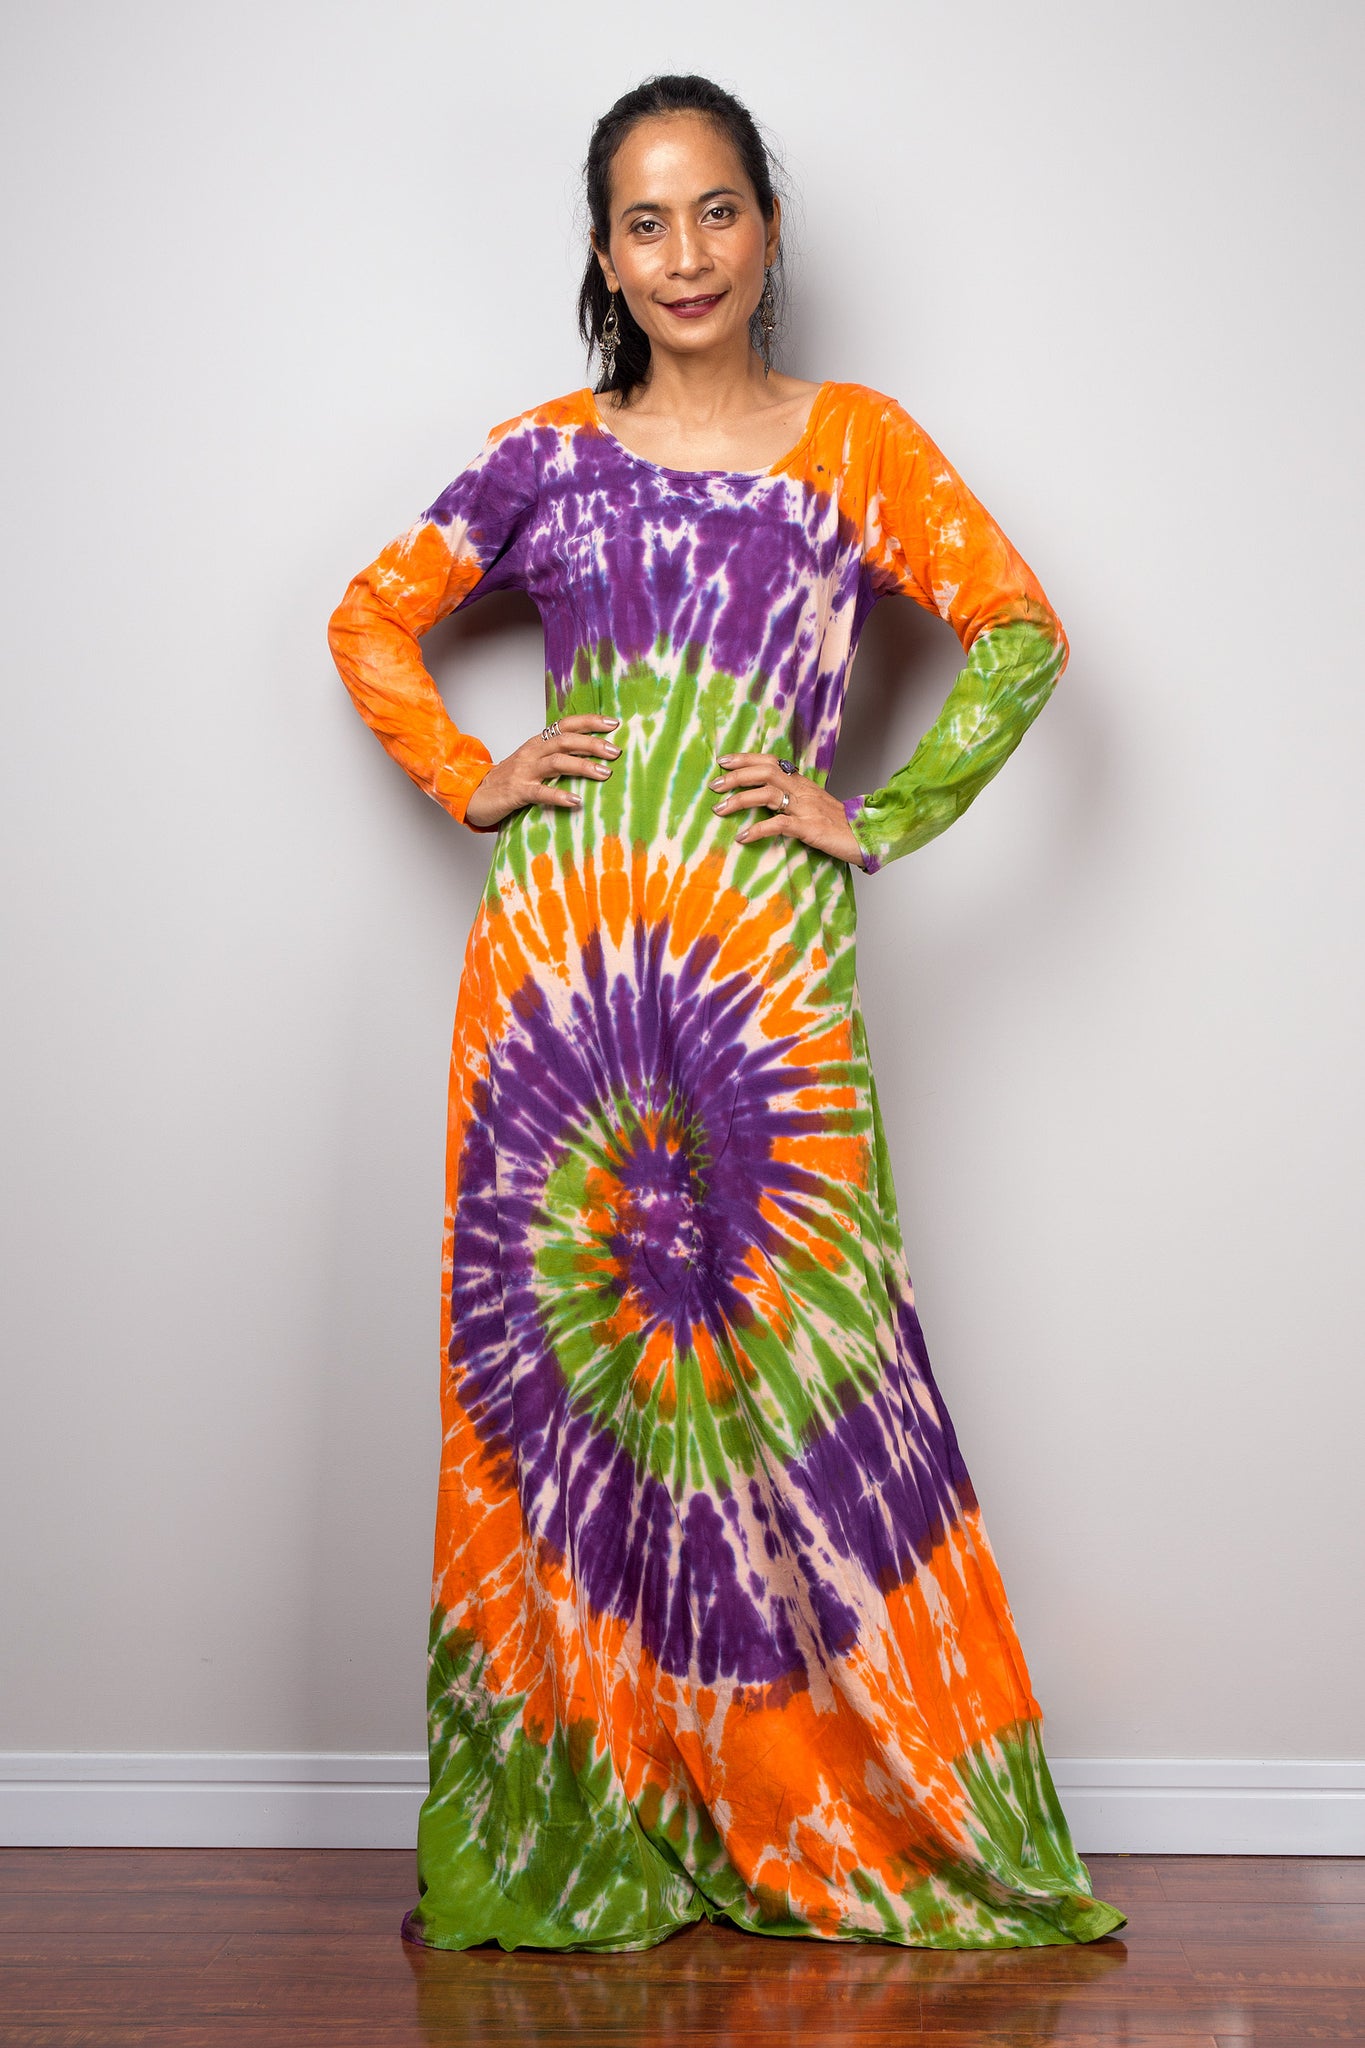 Tie dye swirl dress, Hippie Festival maxi dress, Long Sleeve